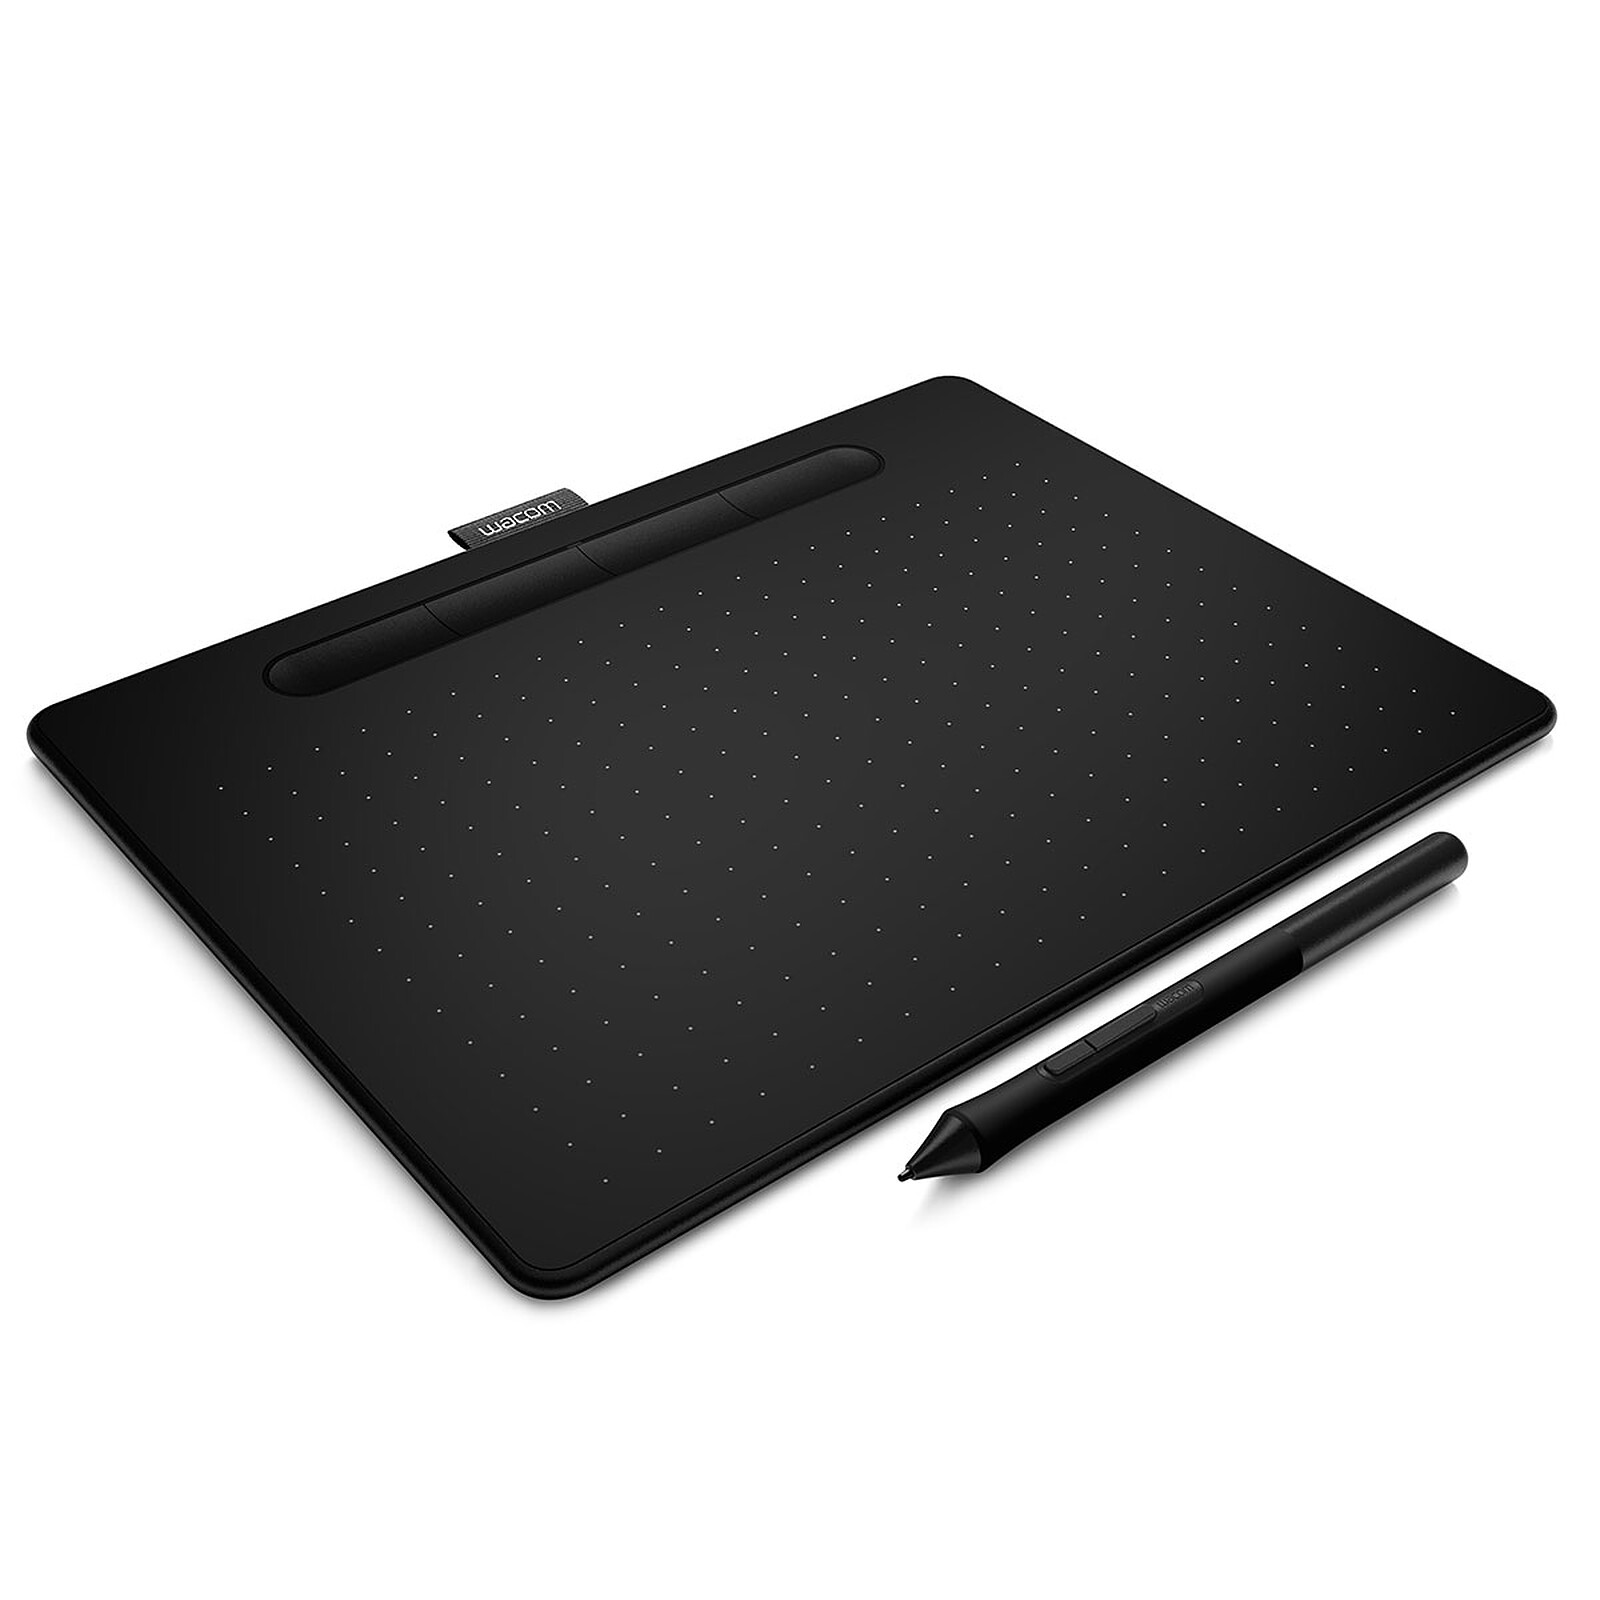 wacom tablet pen setting for corel painter essentials 5